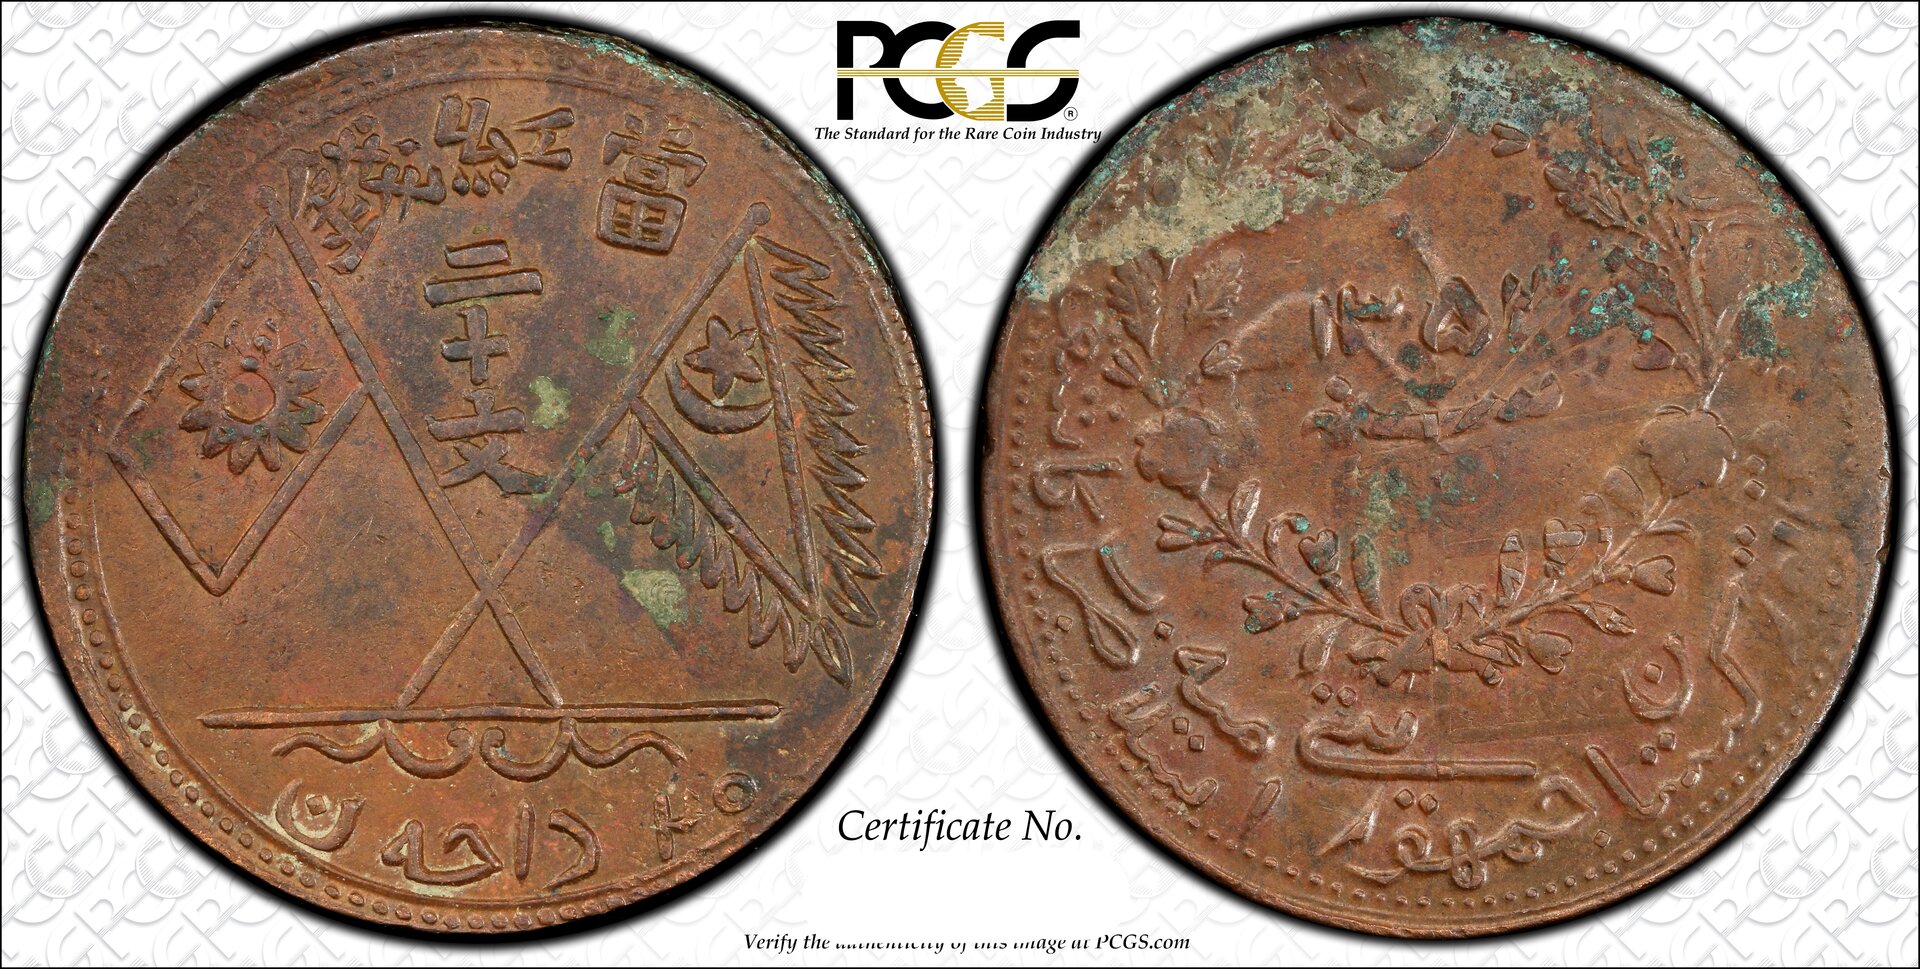 Islamic Republic of Eastern Turkestan 1933 PGCS 31495549-cutout.jpg